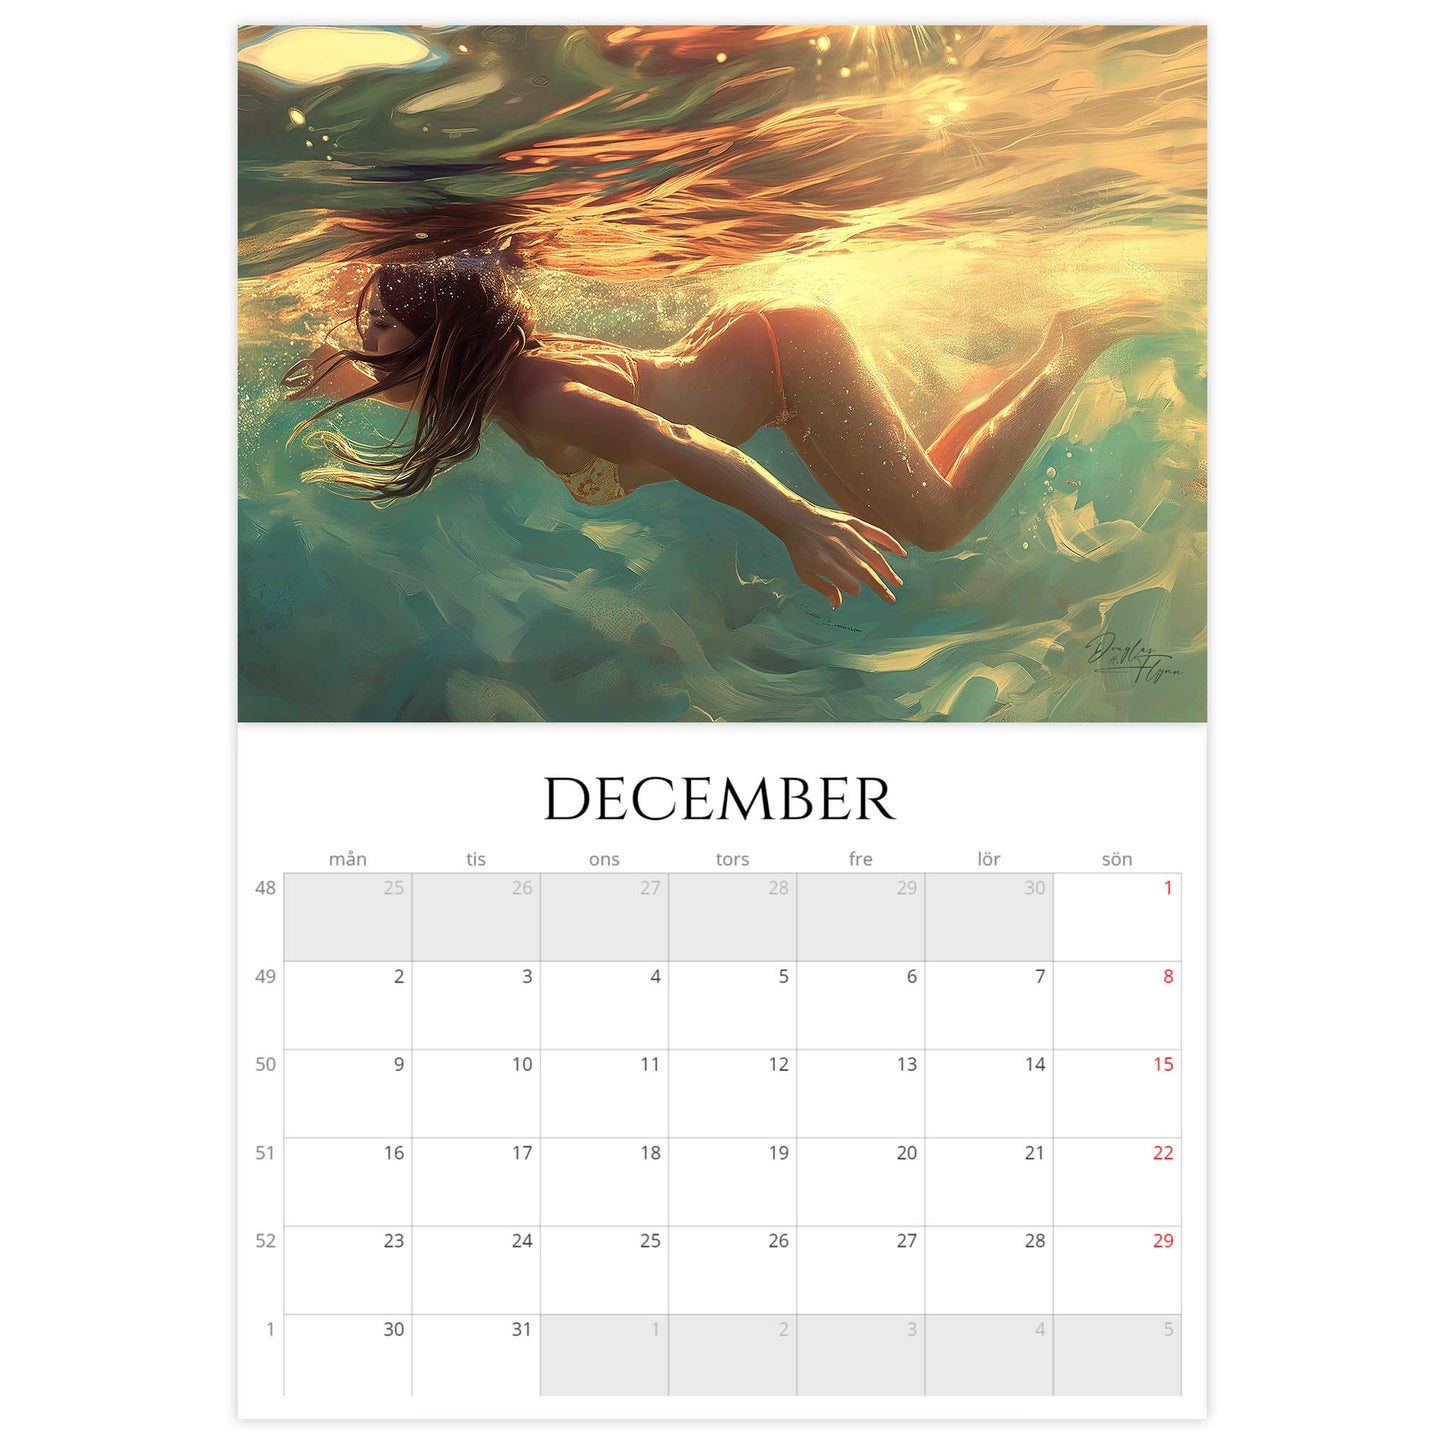 »Swim, Dream, Drift« Väggkalender 2024